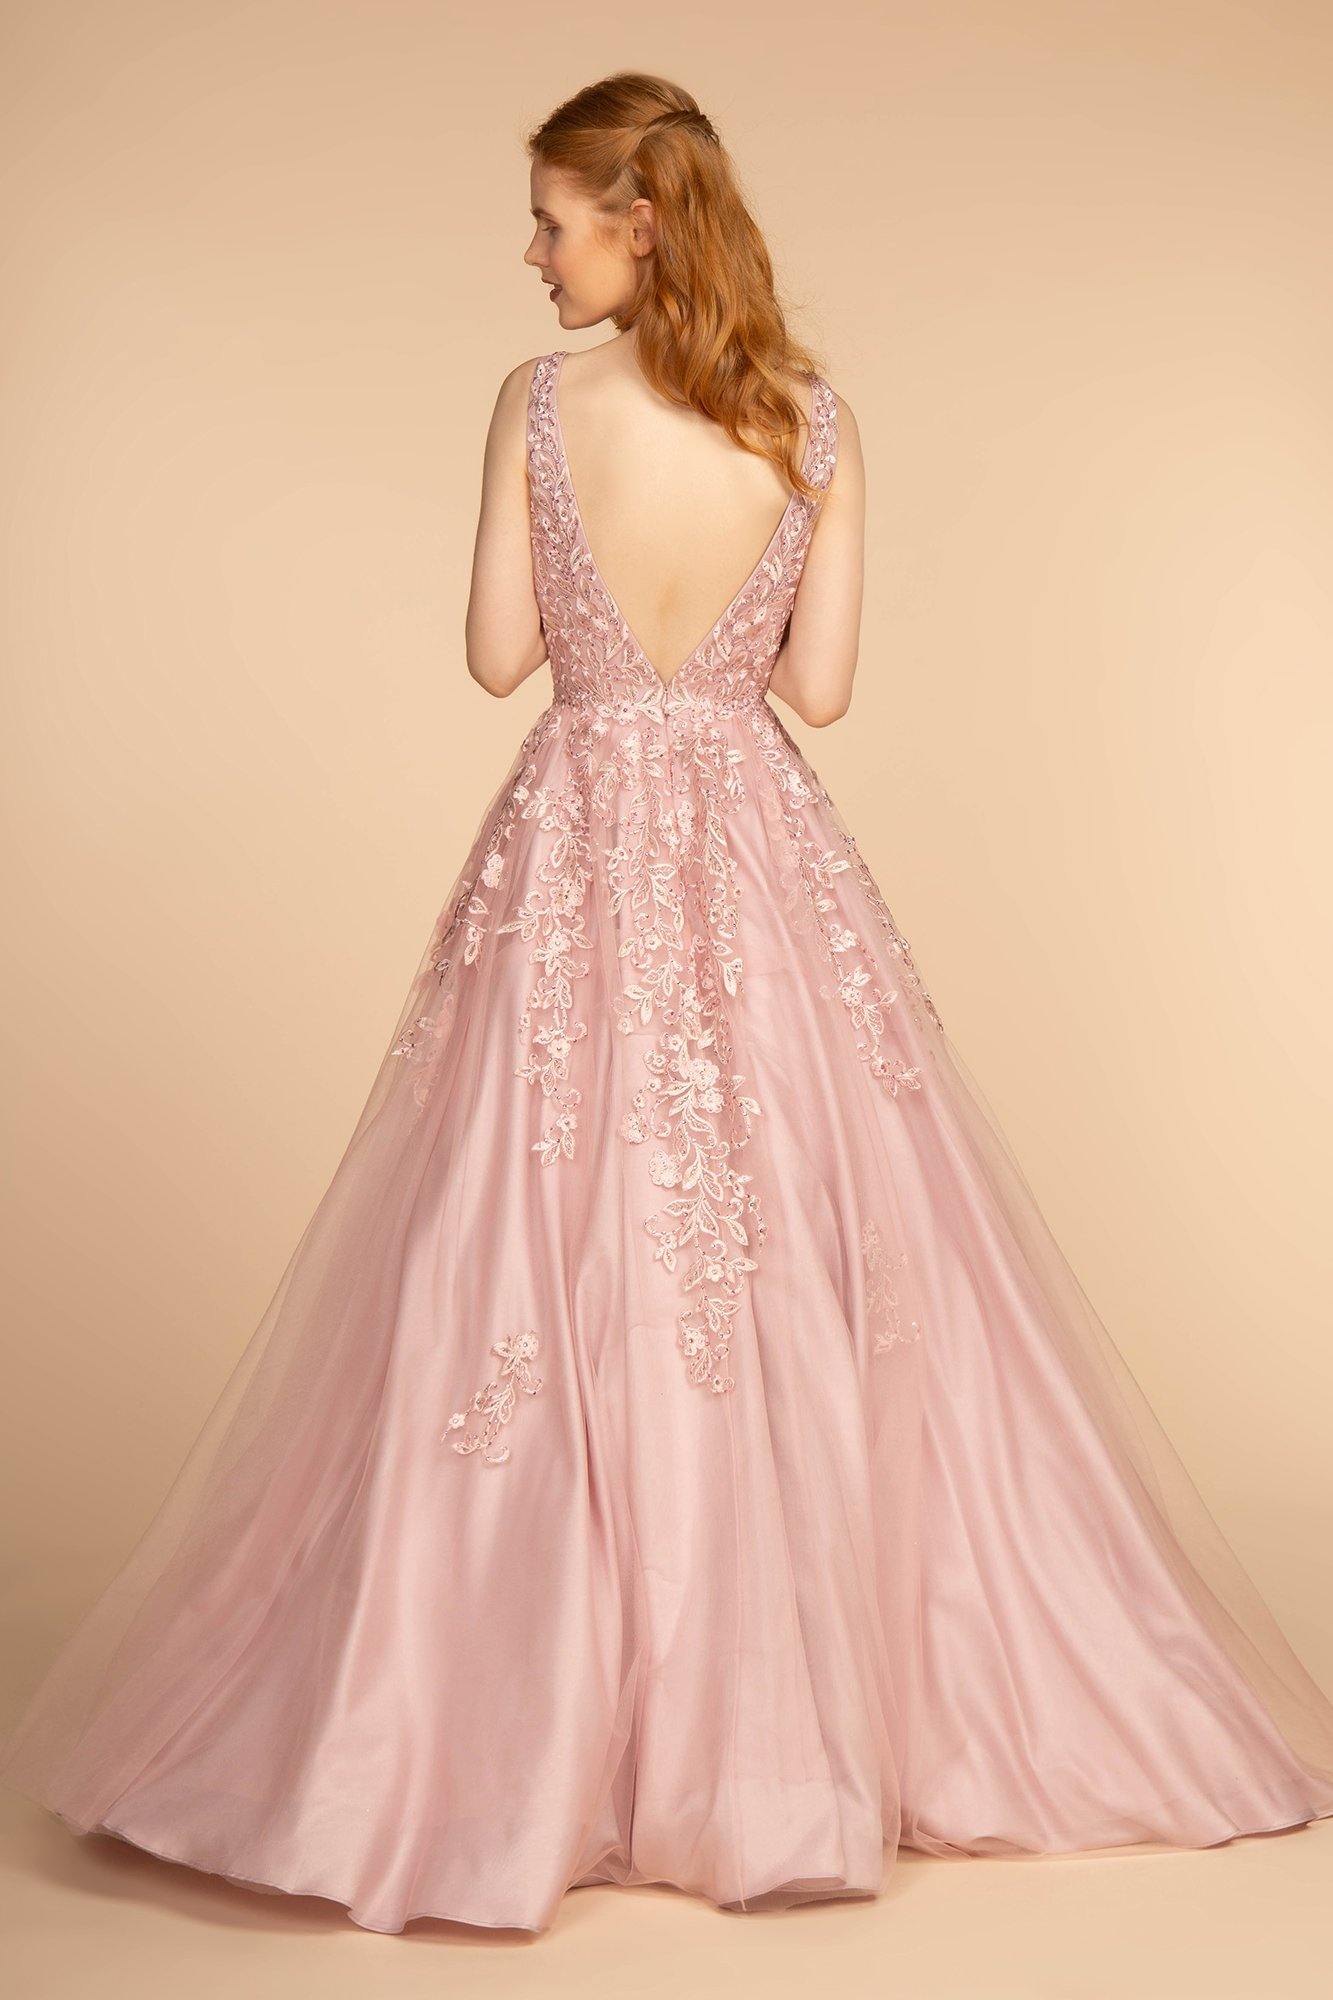 Jewel Embellished Illusion Deep V-Neck Long Dress - The Dress Outlet Elizabeth K